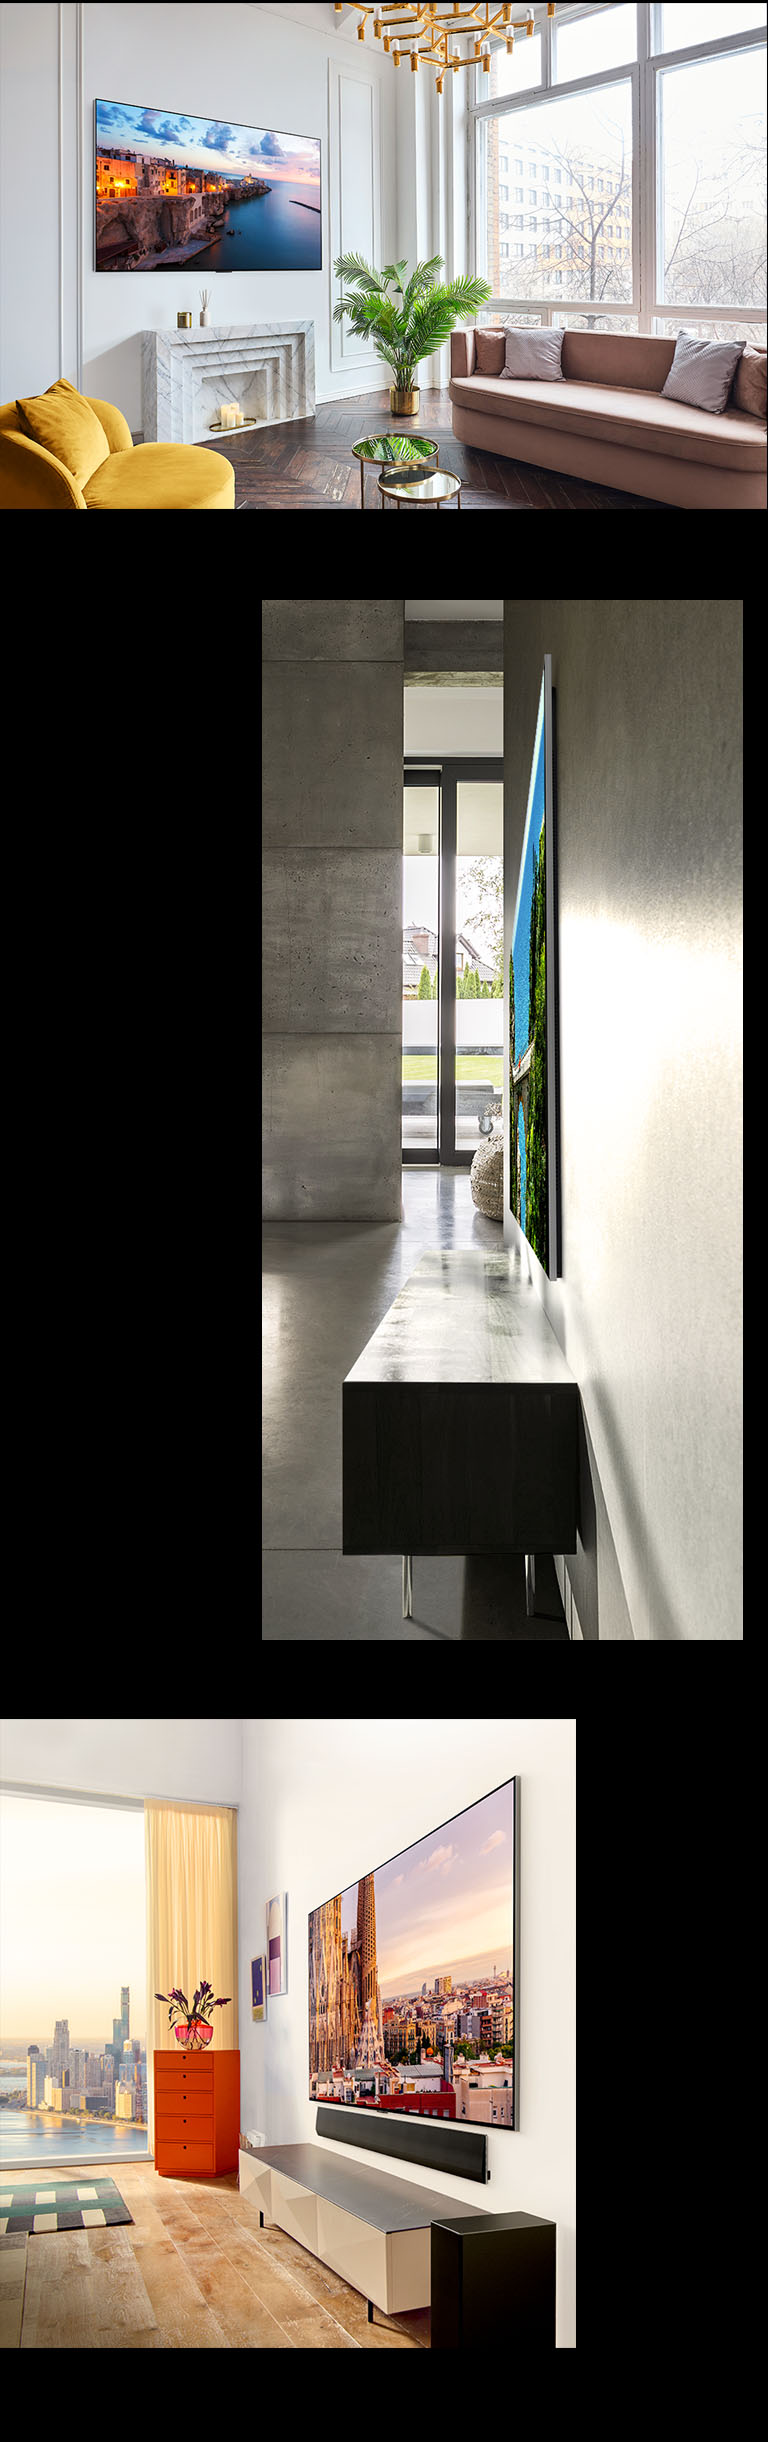 Imagem da LG OLED G3 na parede de uma sala decorada, representando o Design One Wall. Vista lateral das dimensões incrivelmente finas da LG OLED G3. Vista em ângulo da LG OLED G3 na parede de um apartamento com vista urbana, tendo uma Soundbar abaixo de si.